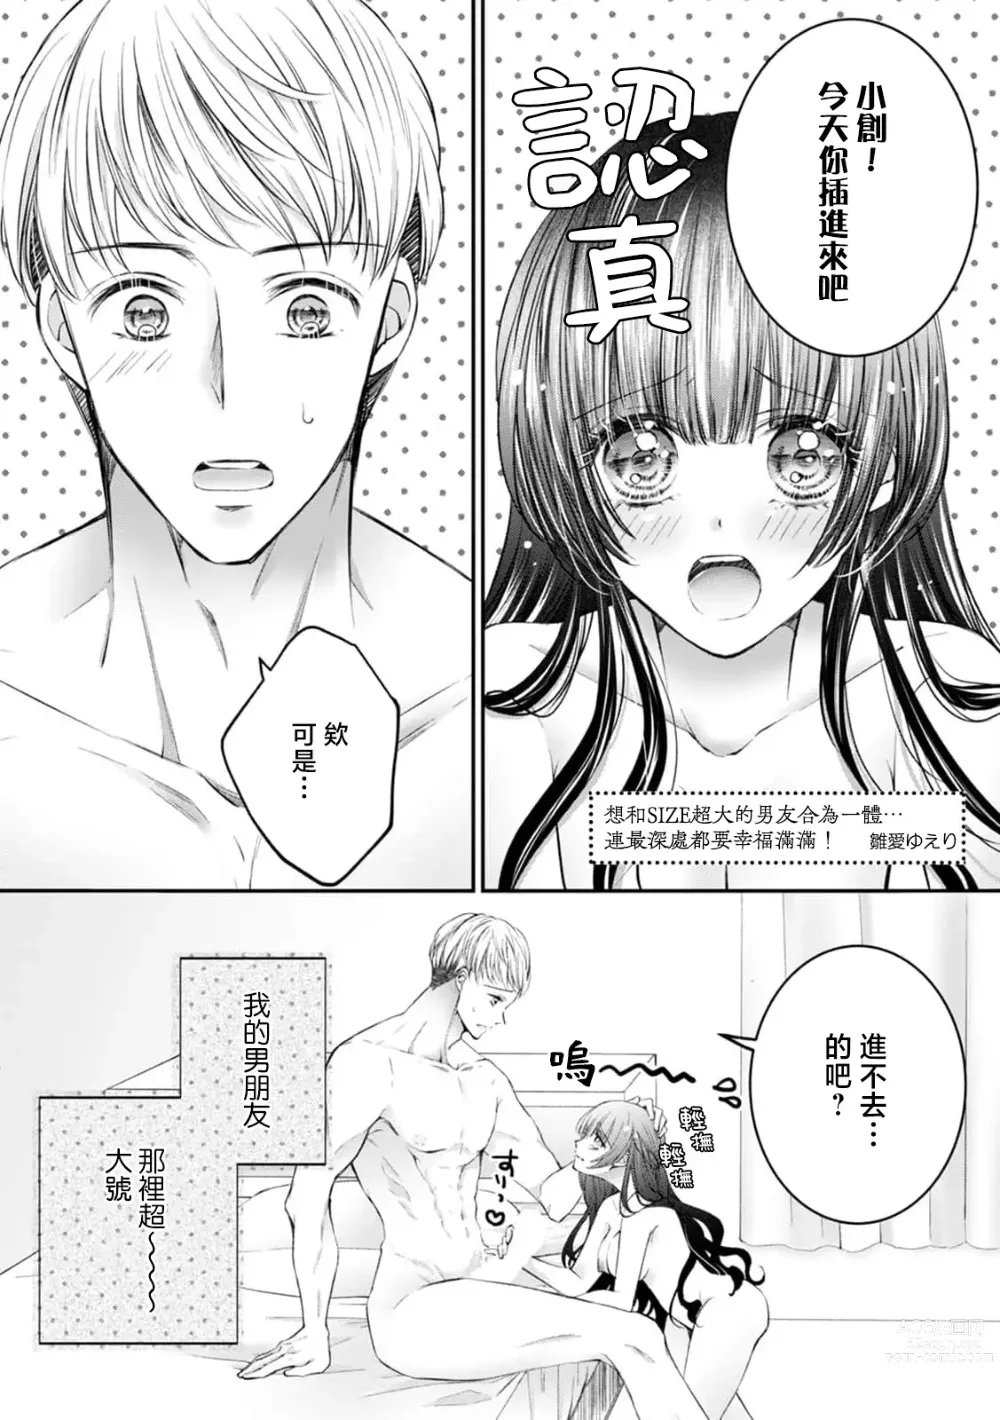 Page 2 of manga 想和SIZE超大的男友合为一体… 连最深处都要幸福满满！